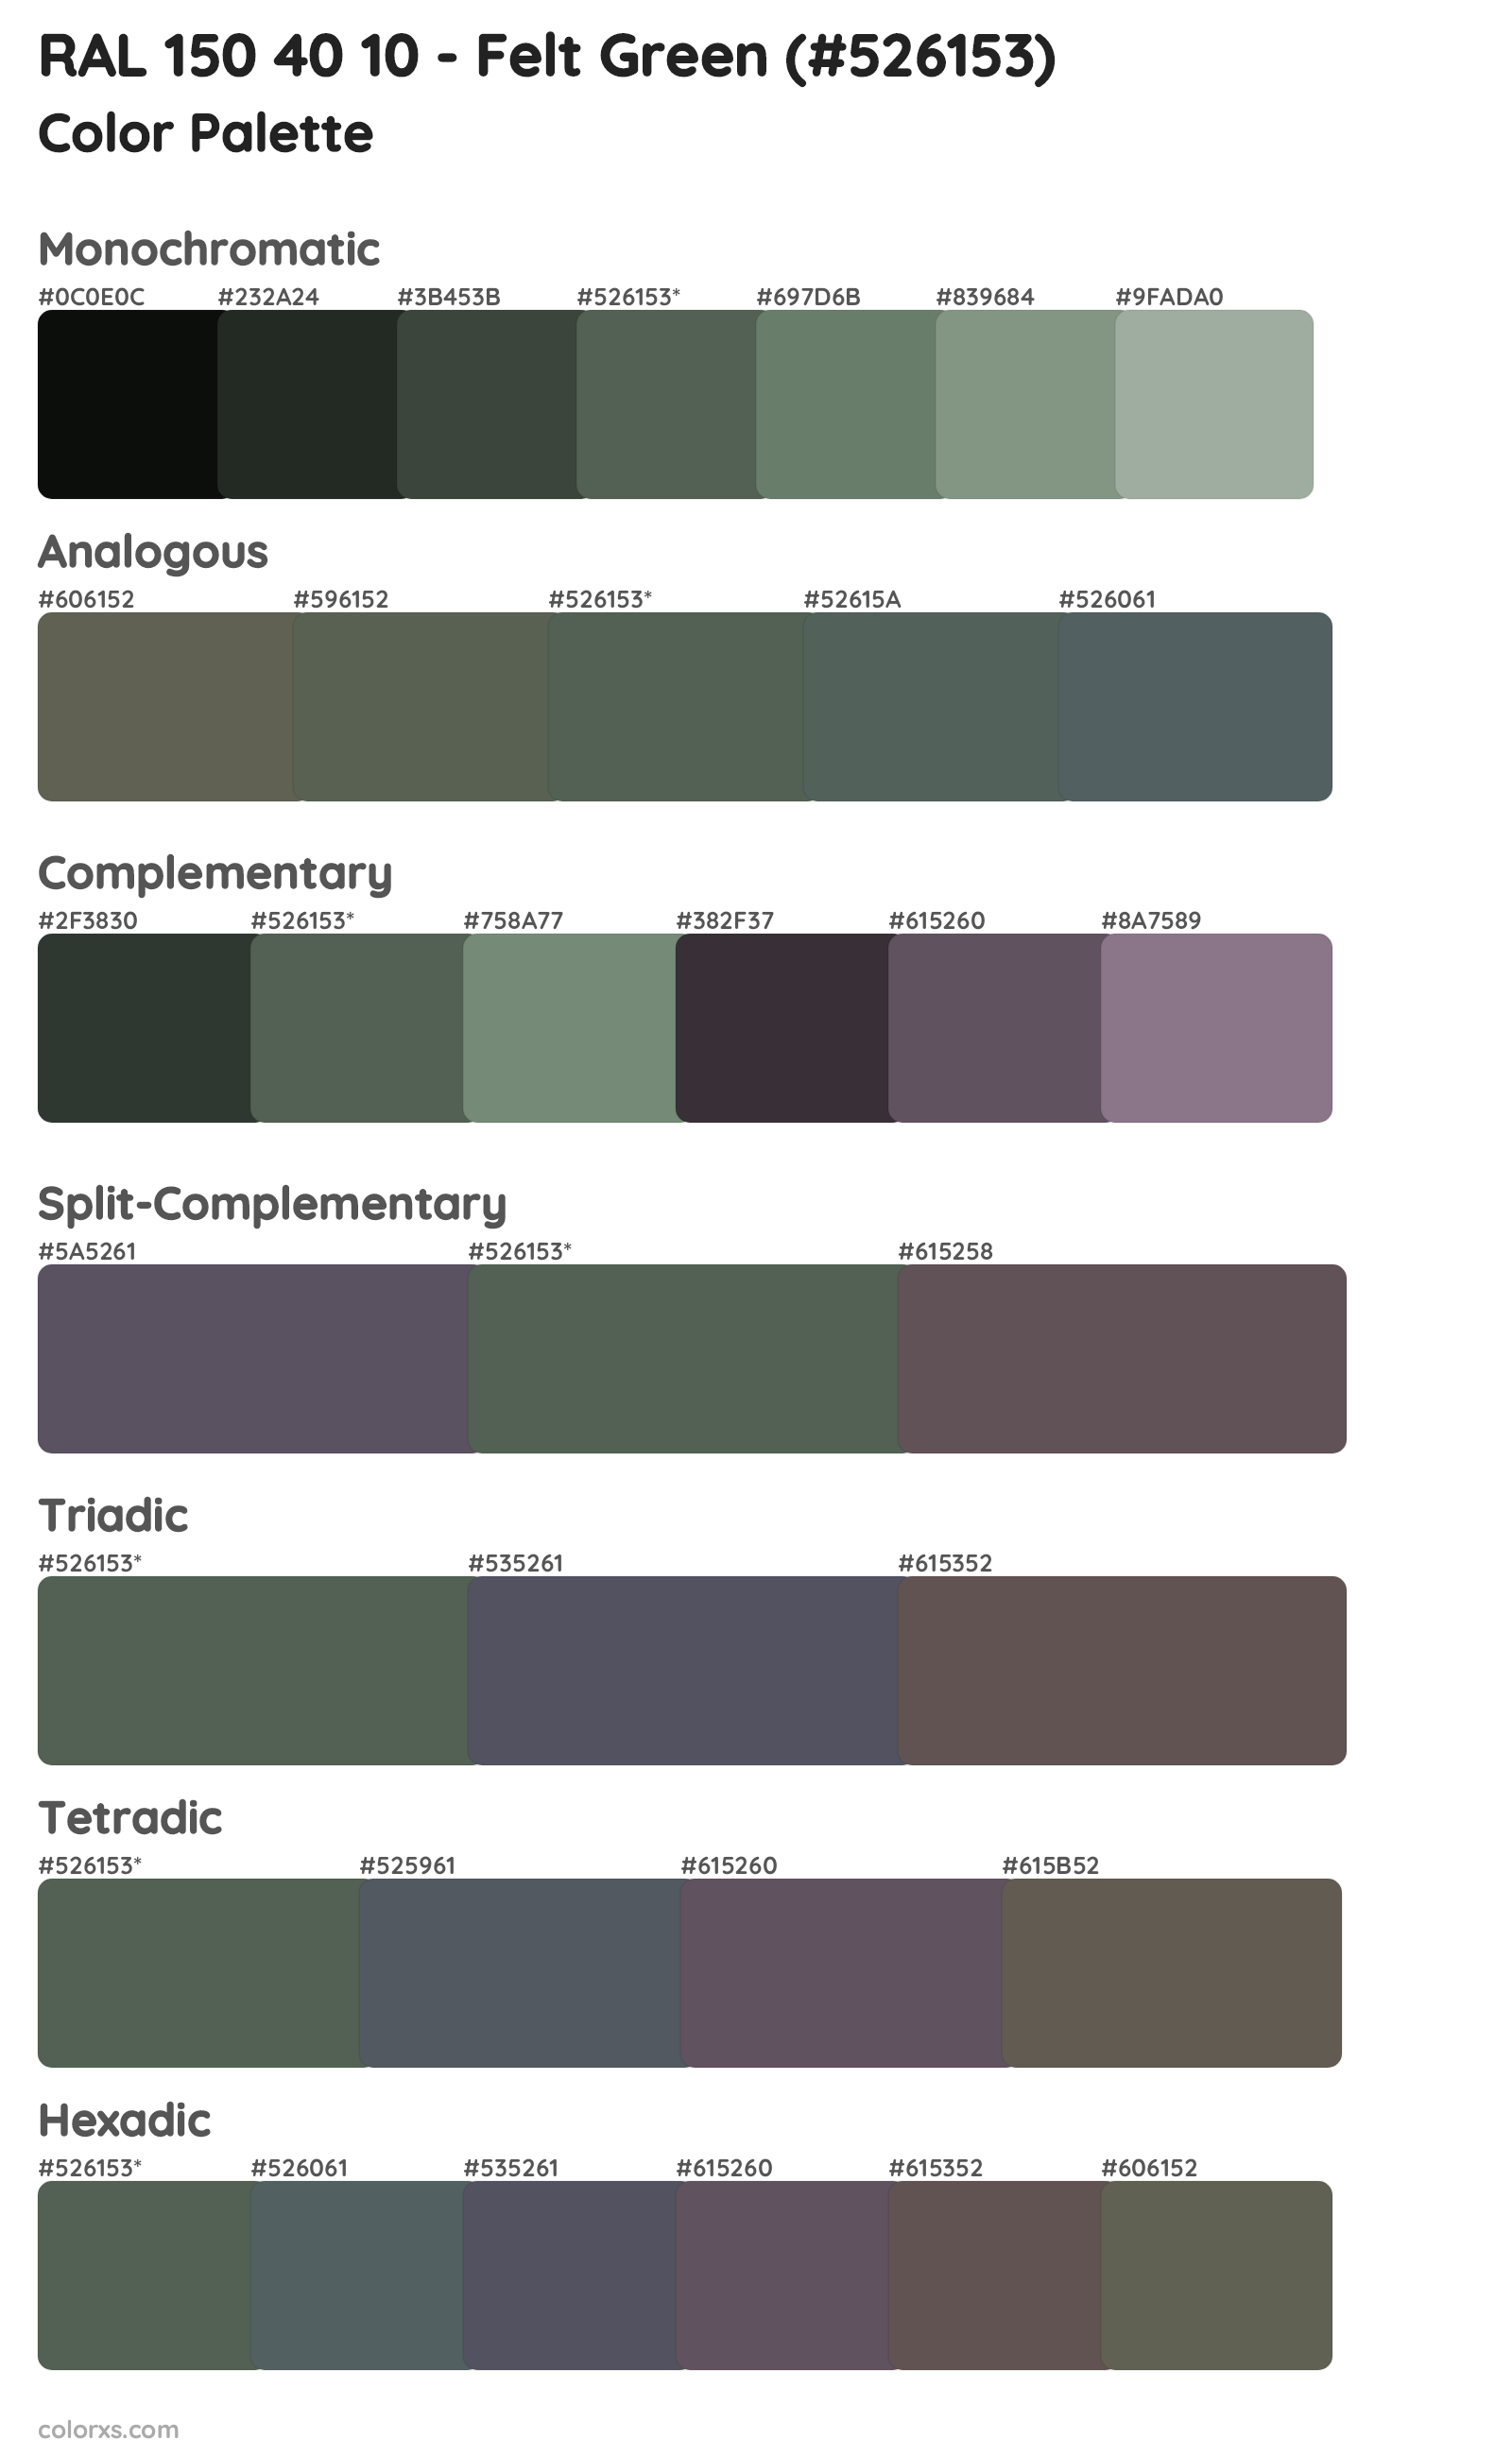 RAL 150 40 10 - Felt Green Color Scheme Palettes